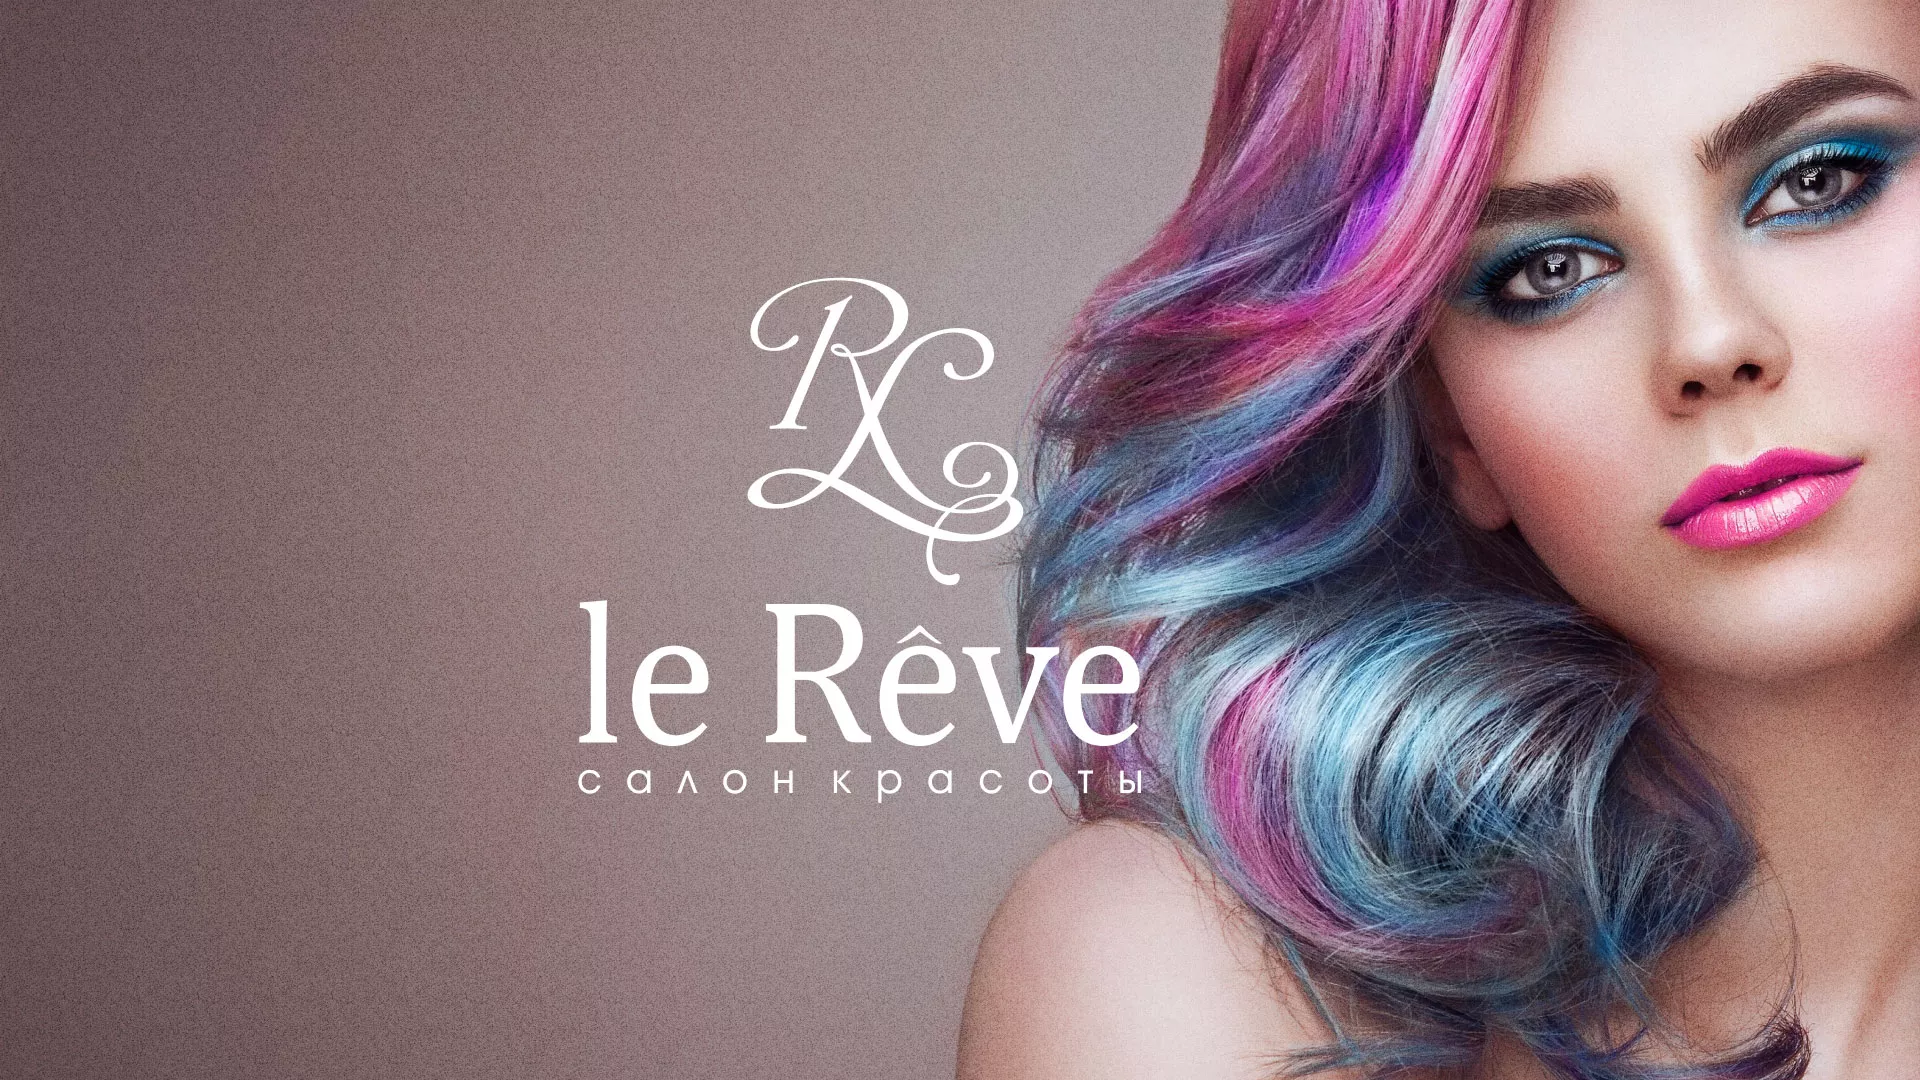 Создание сайта для салона красоты «Le Reve» в Москве